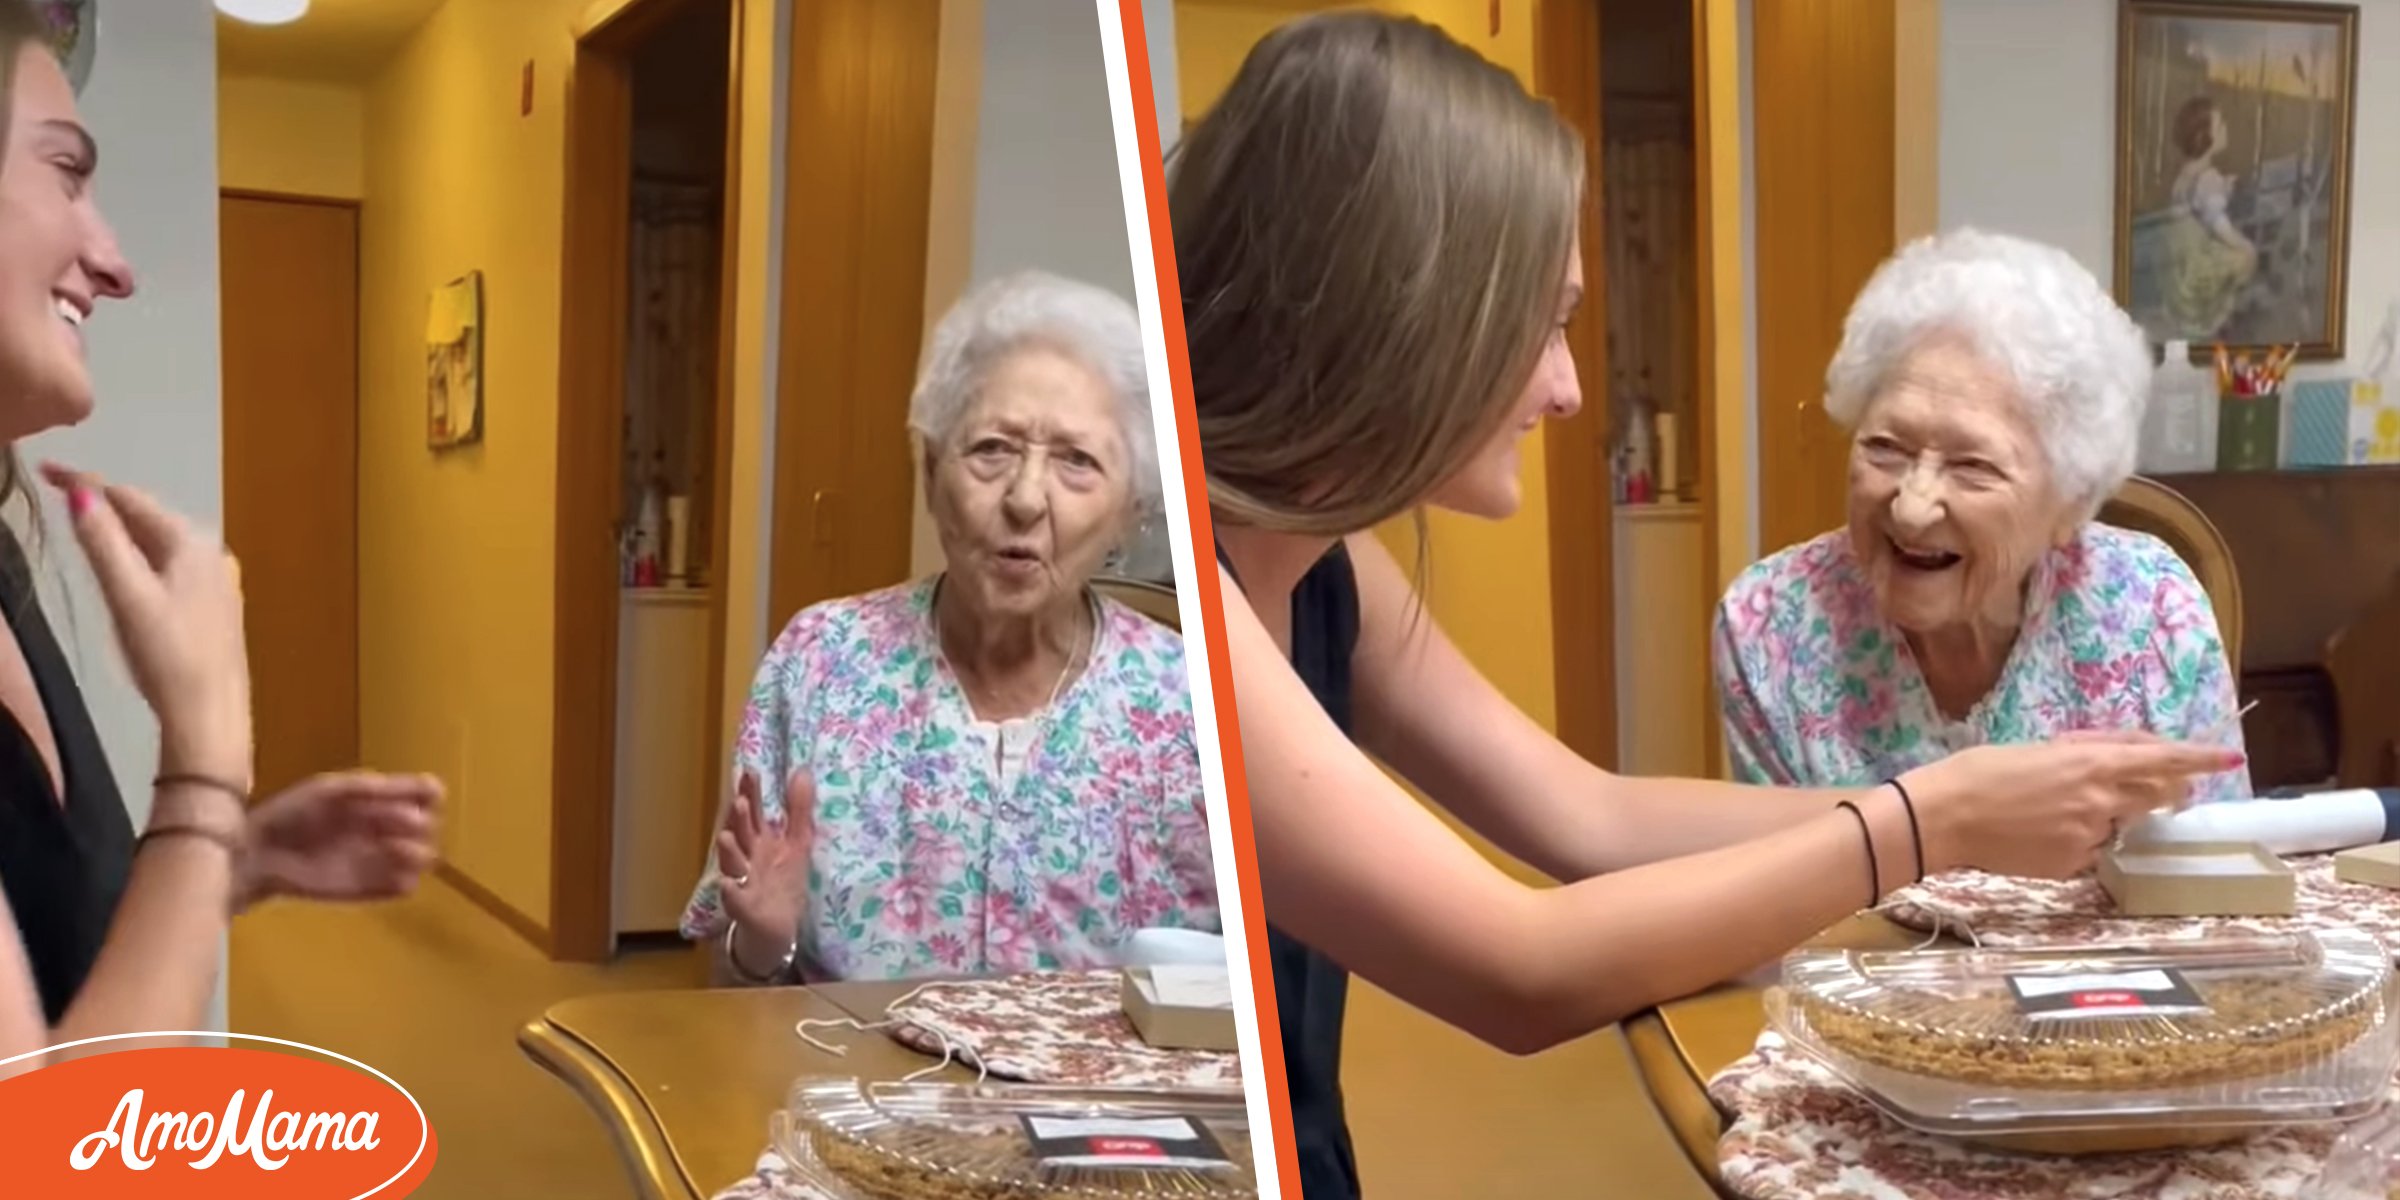 Une femme demande à son arrière-grand-mère de 101 ans d’être sa demoiselle d’honneur à son mariage après le lui avoir promis lorsqu’elle était enfant